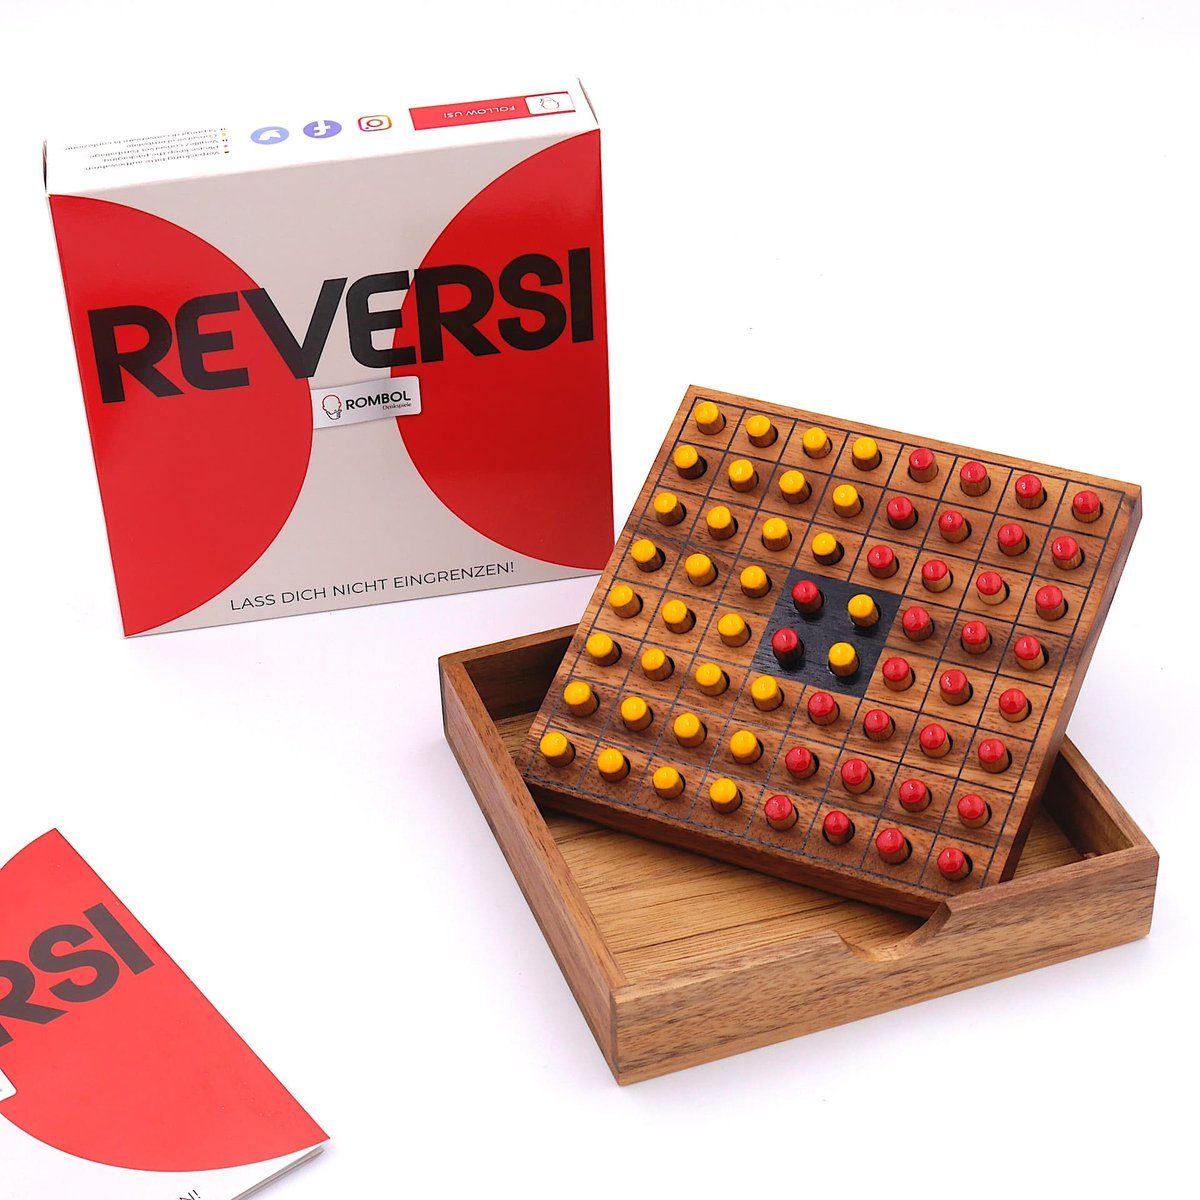 rot/gelb aus Denkspiele 2 Reversi ROMBOL für Holz, – Brettspiel Interessantes Strategiespiel edlem Holzspiel Spiel, Personen